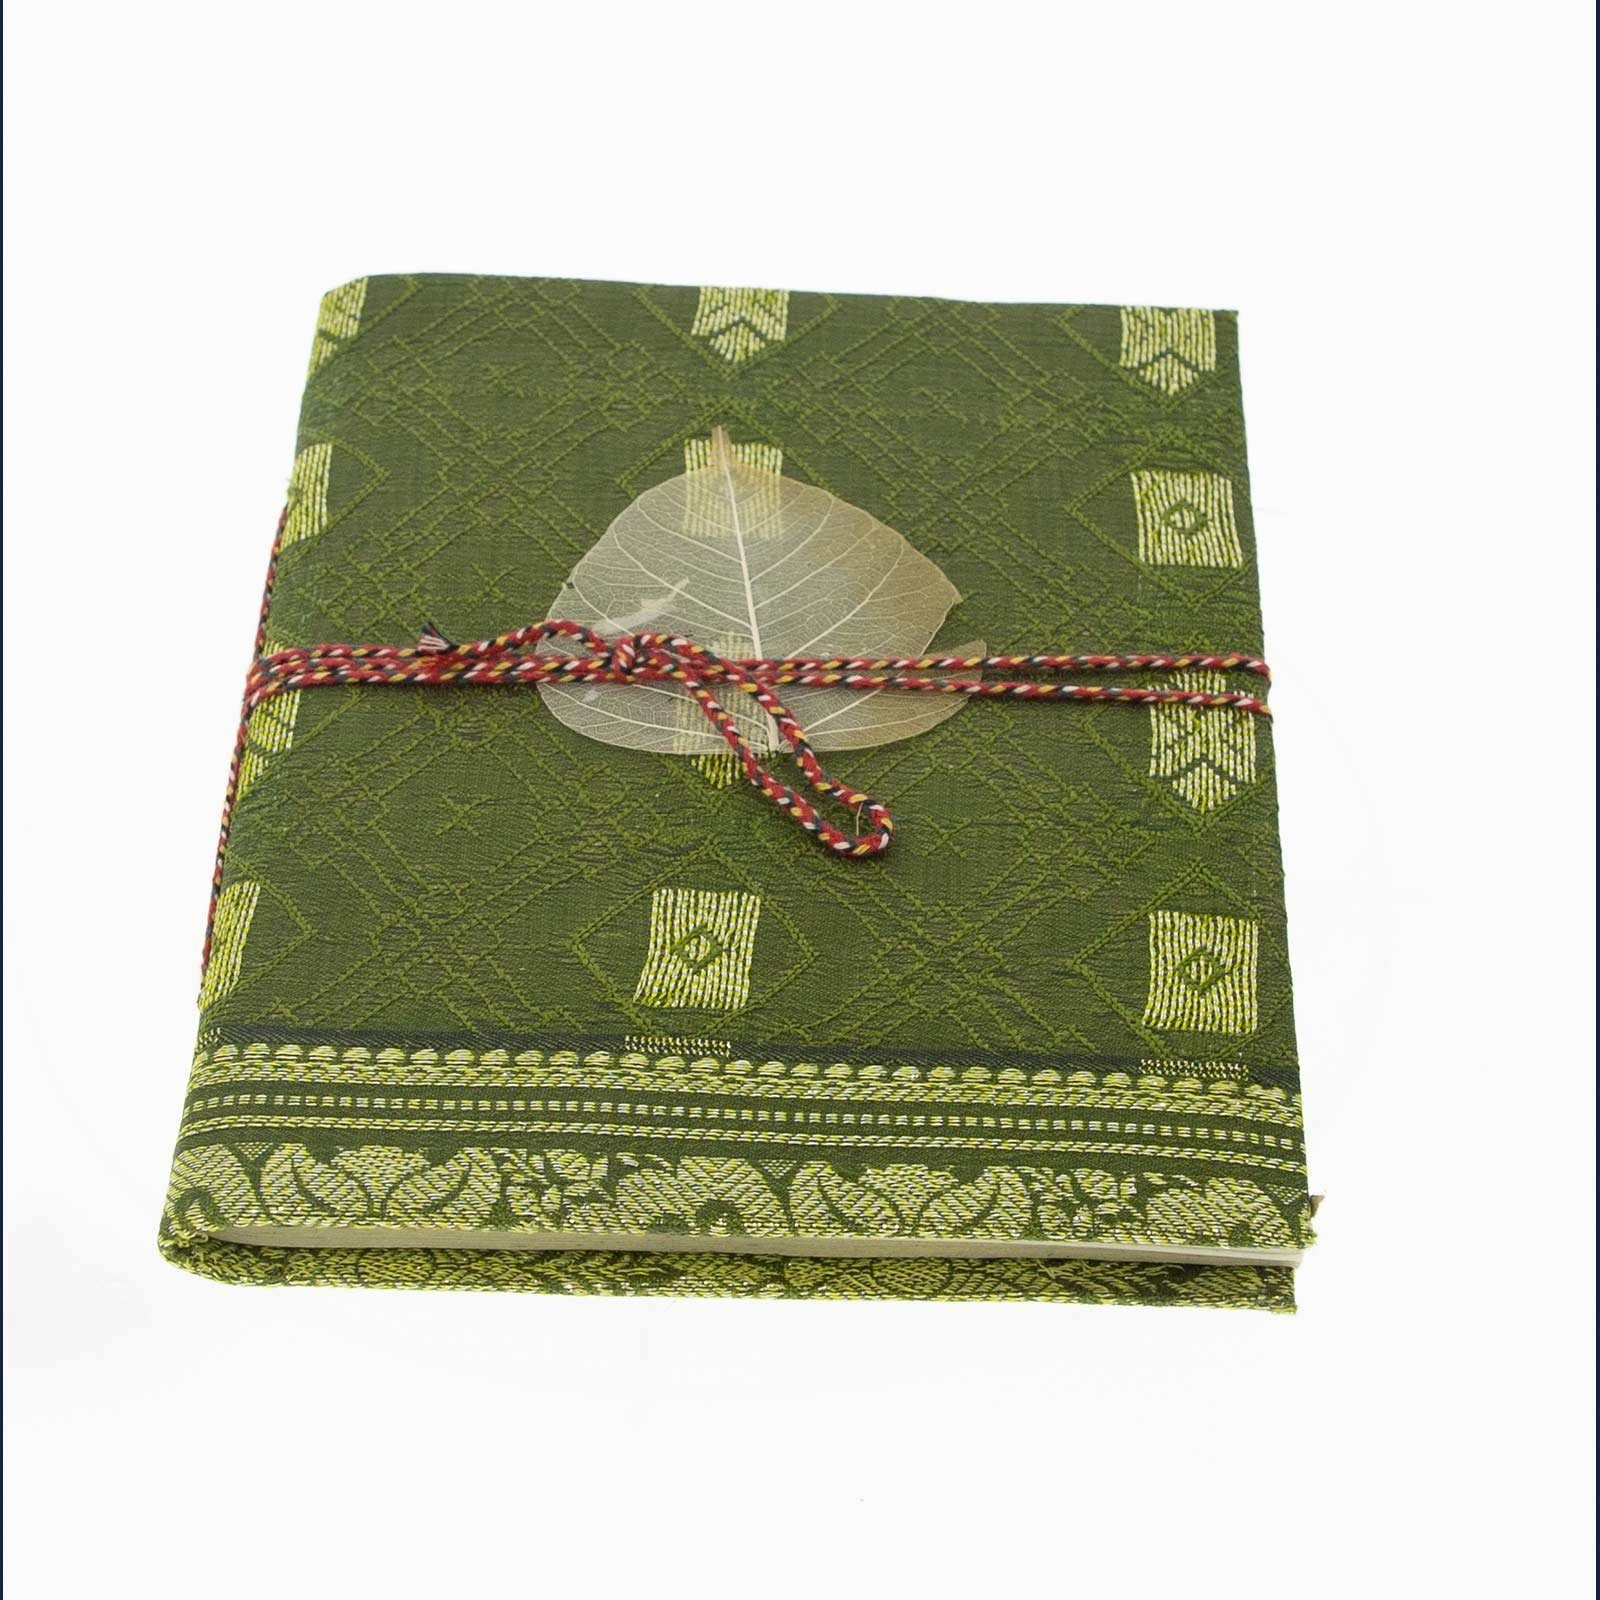 KUNST UND MAGIE Tagebuch Mini Tagebuch Poesiealbum Sari Baumwollpapier Notizbuch Indien8x12cm